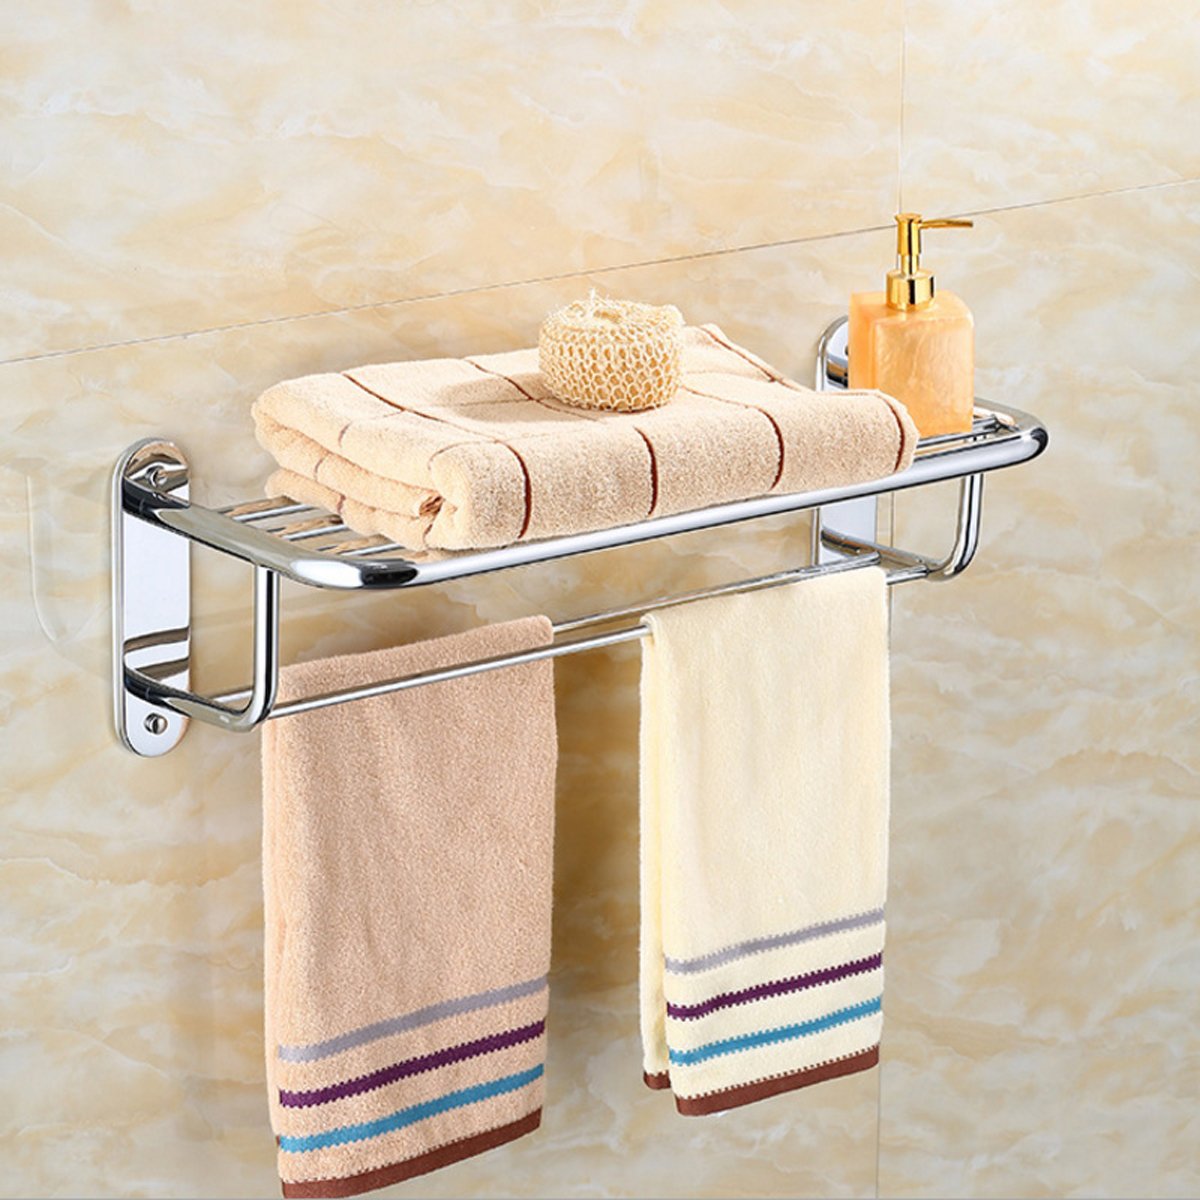 Купить полотенца полка. Полка для кухни навесная w6733 (с держателем для полотенца). Cubito 381736 полочка для полотенец 57см, хром. Полка для полотенец в ванную. Полка с полотенцедержателем для ванной.